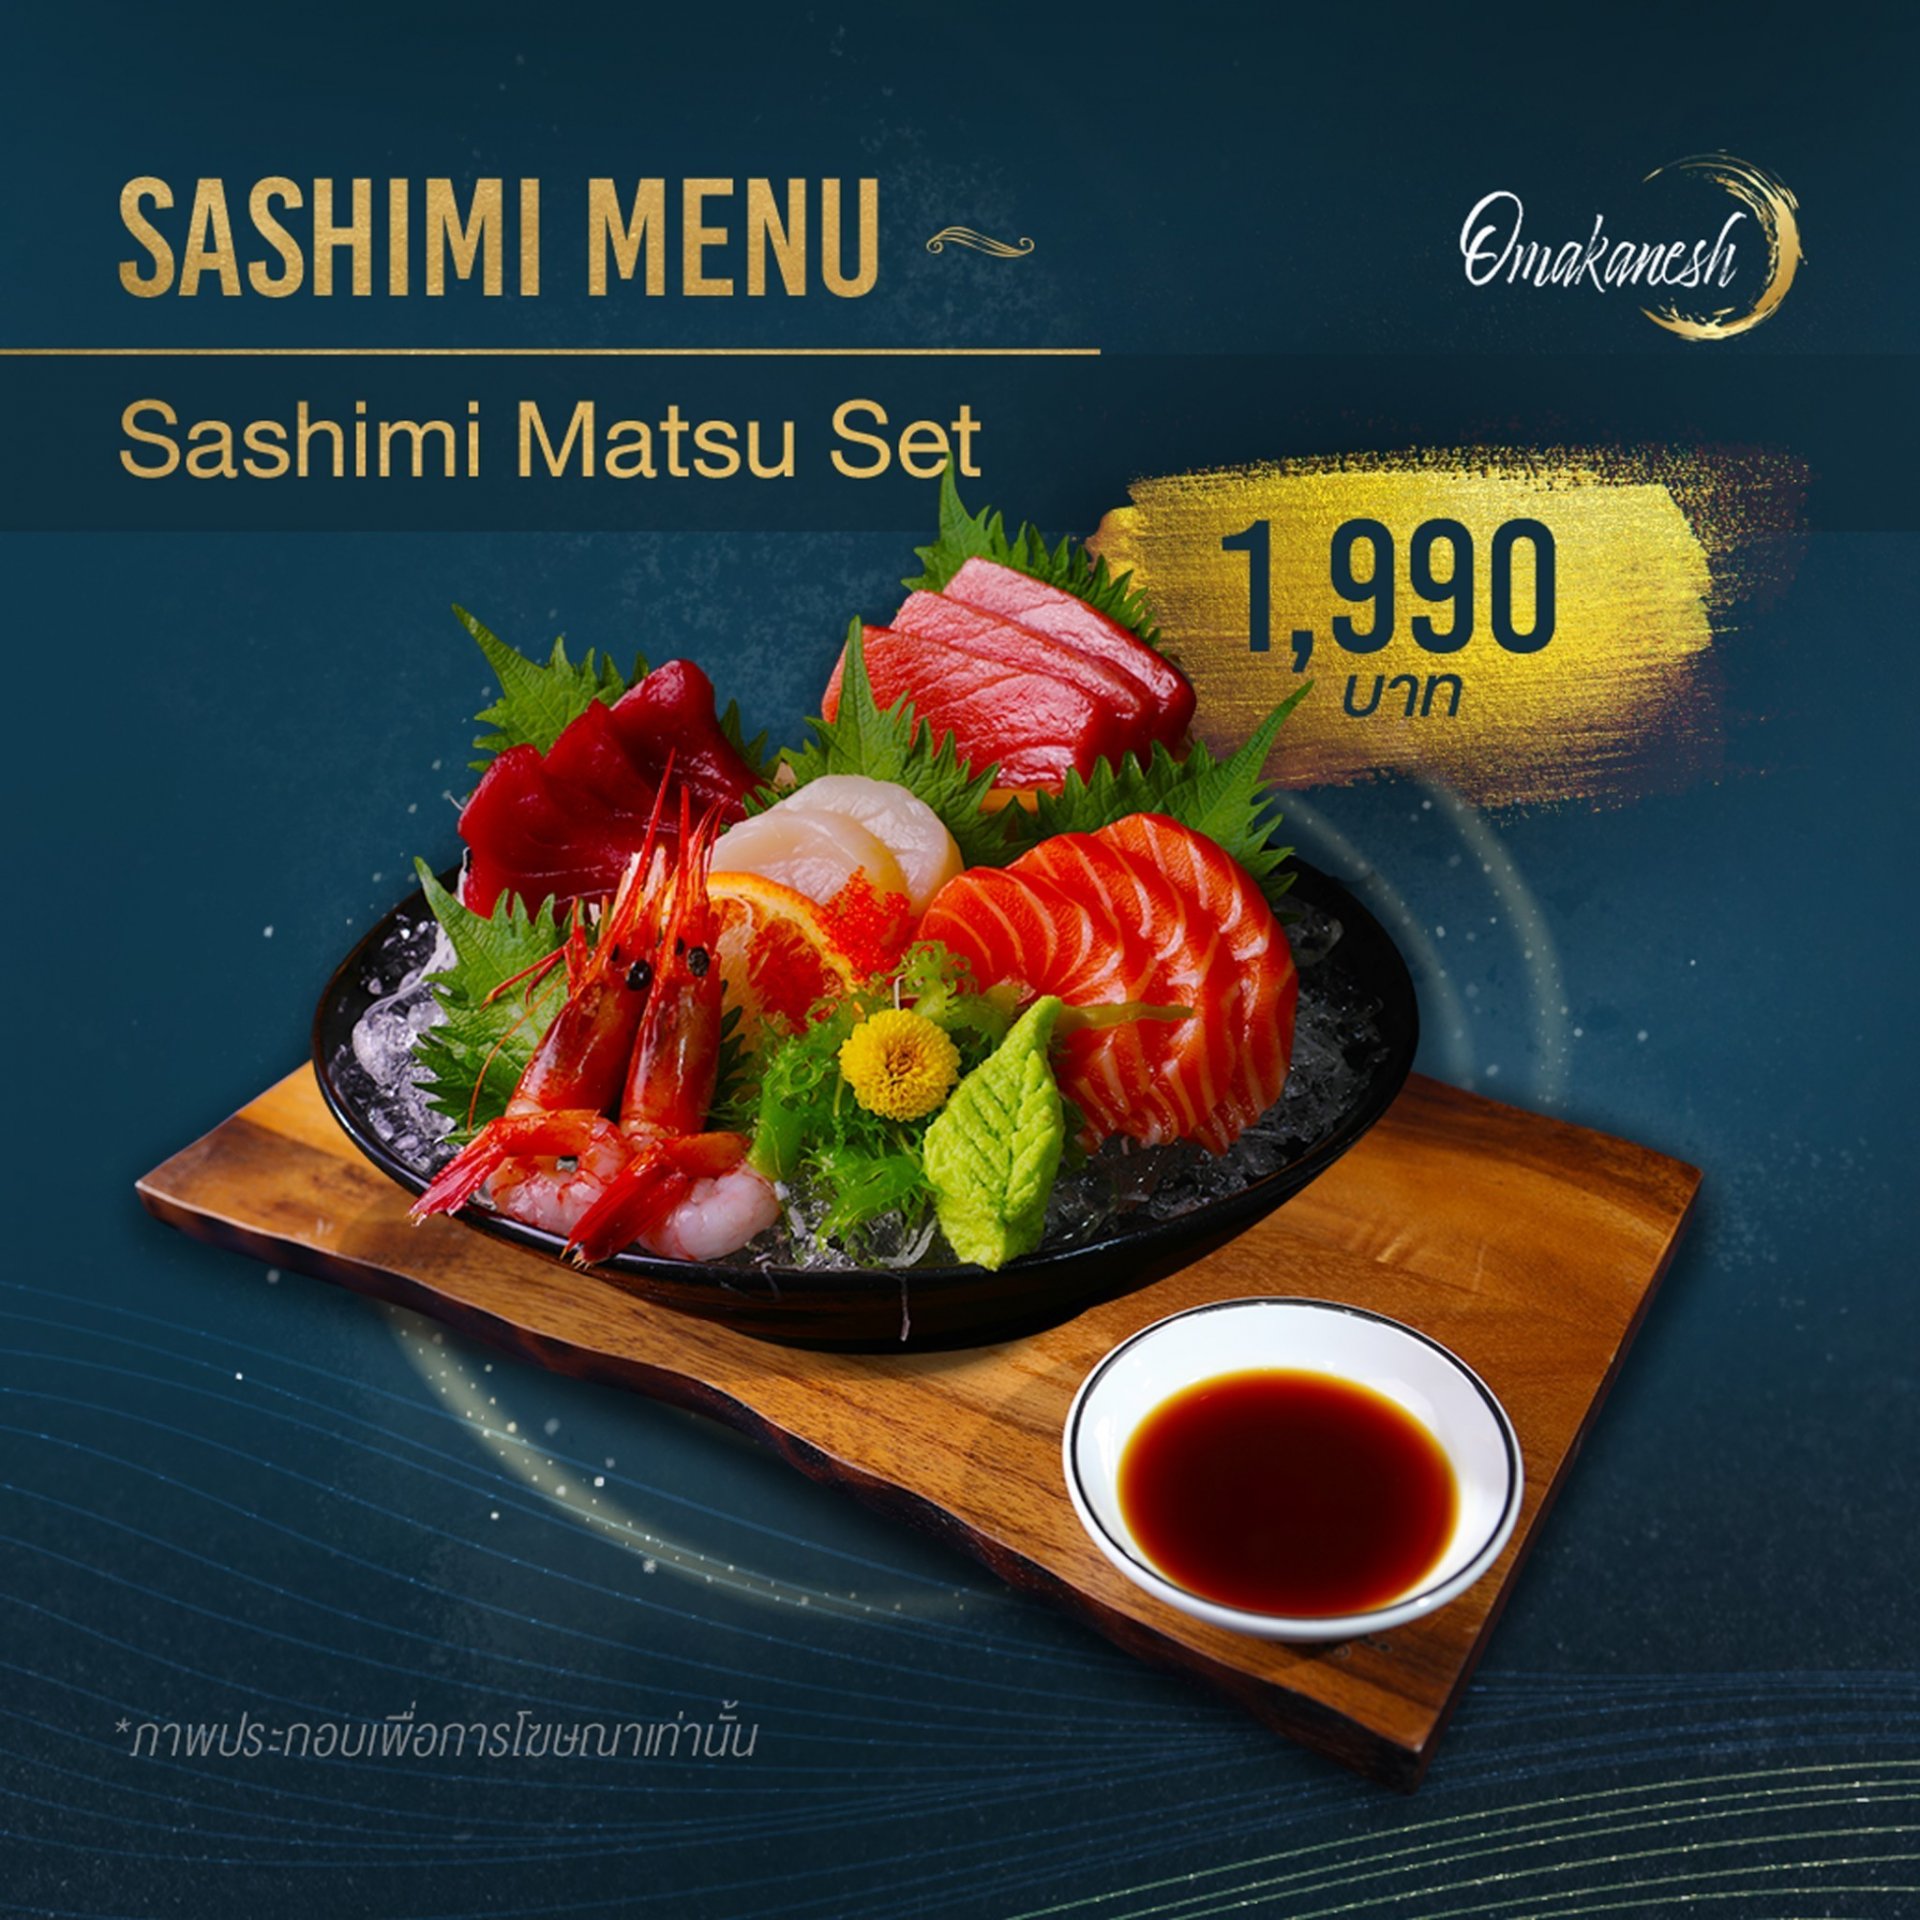 Sashimi Matsu Set